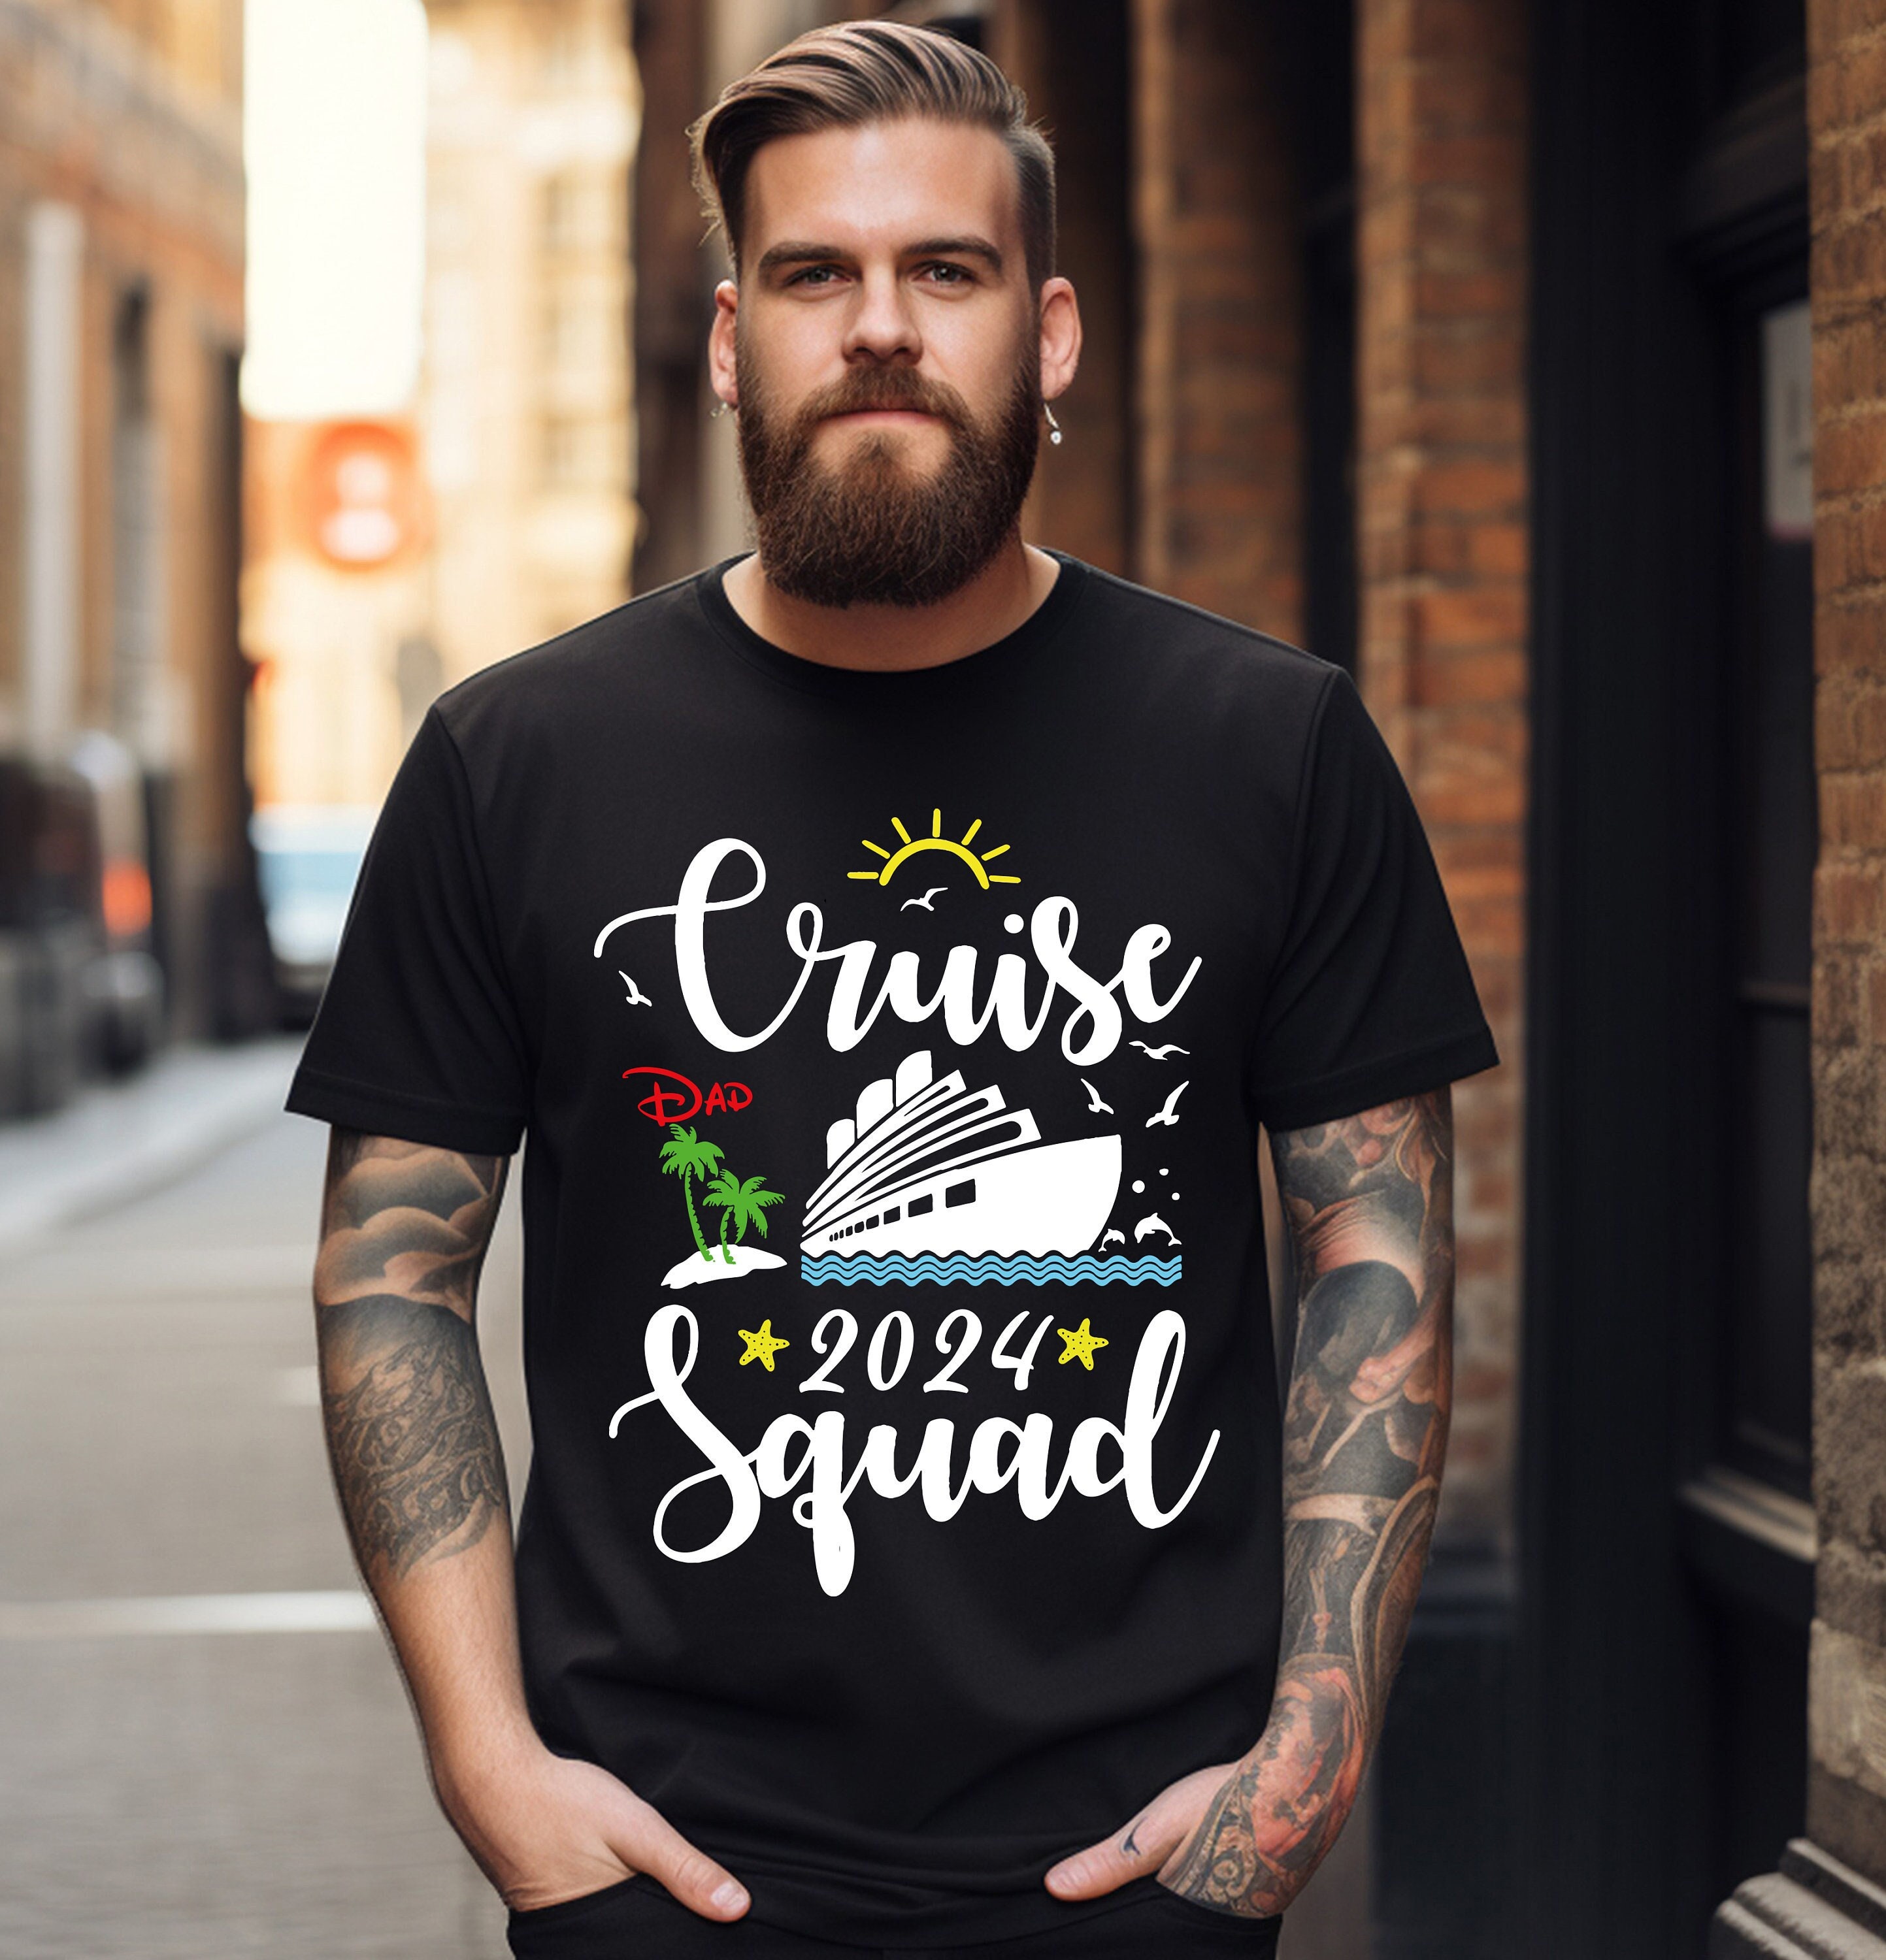 Cruise Squad Shirt, Family Cruise Shirts, Cruise Vacation Shirt